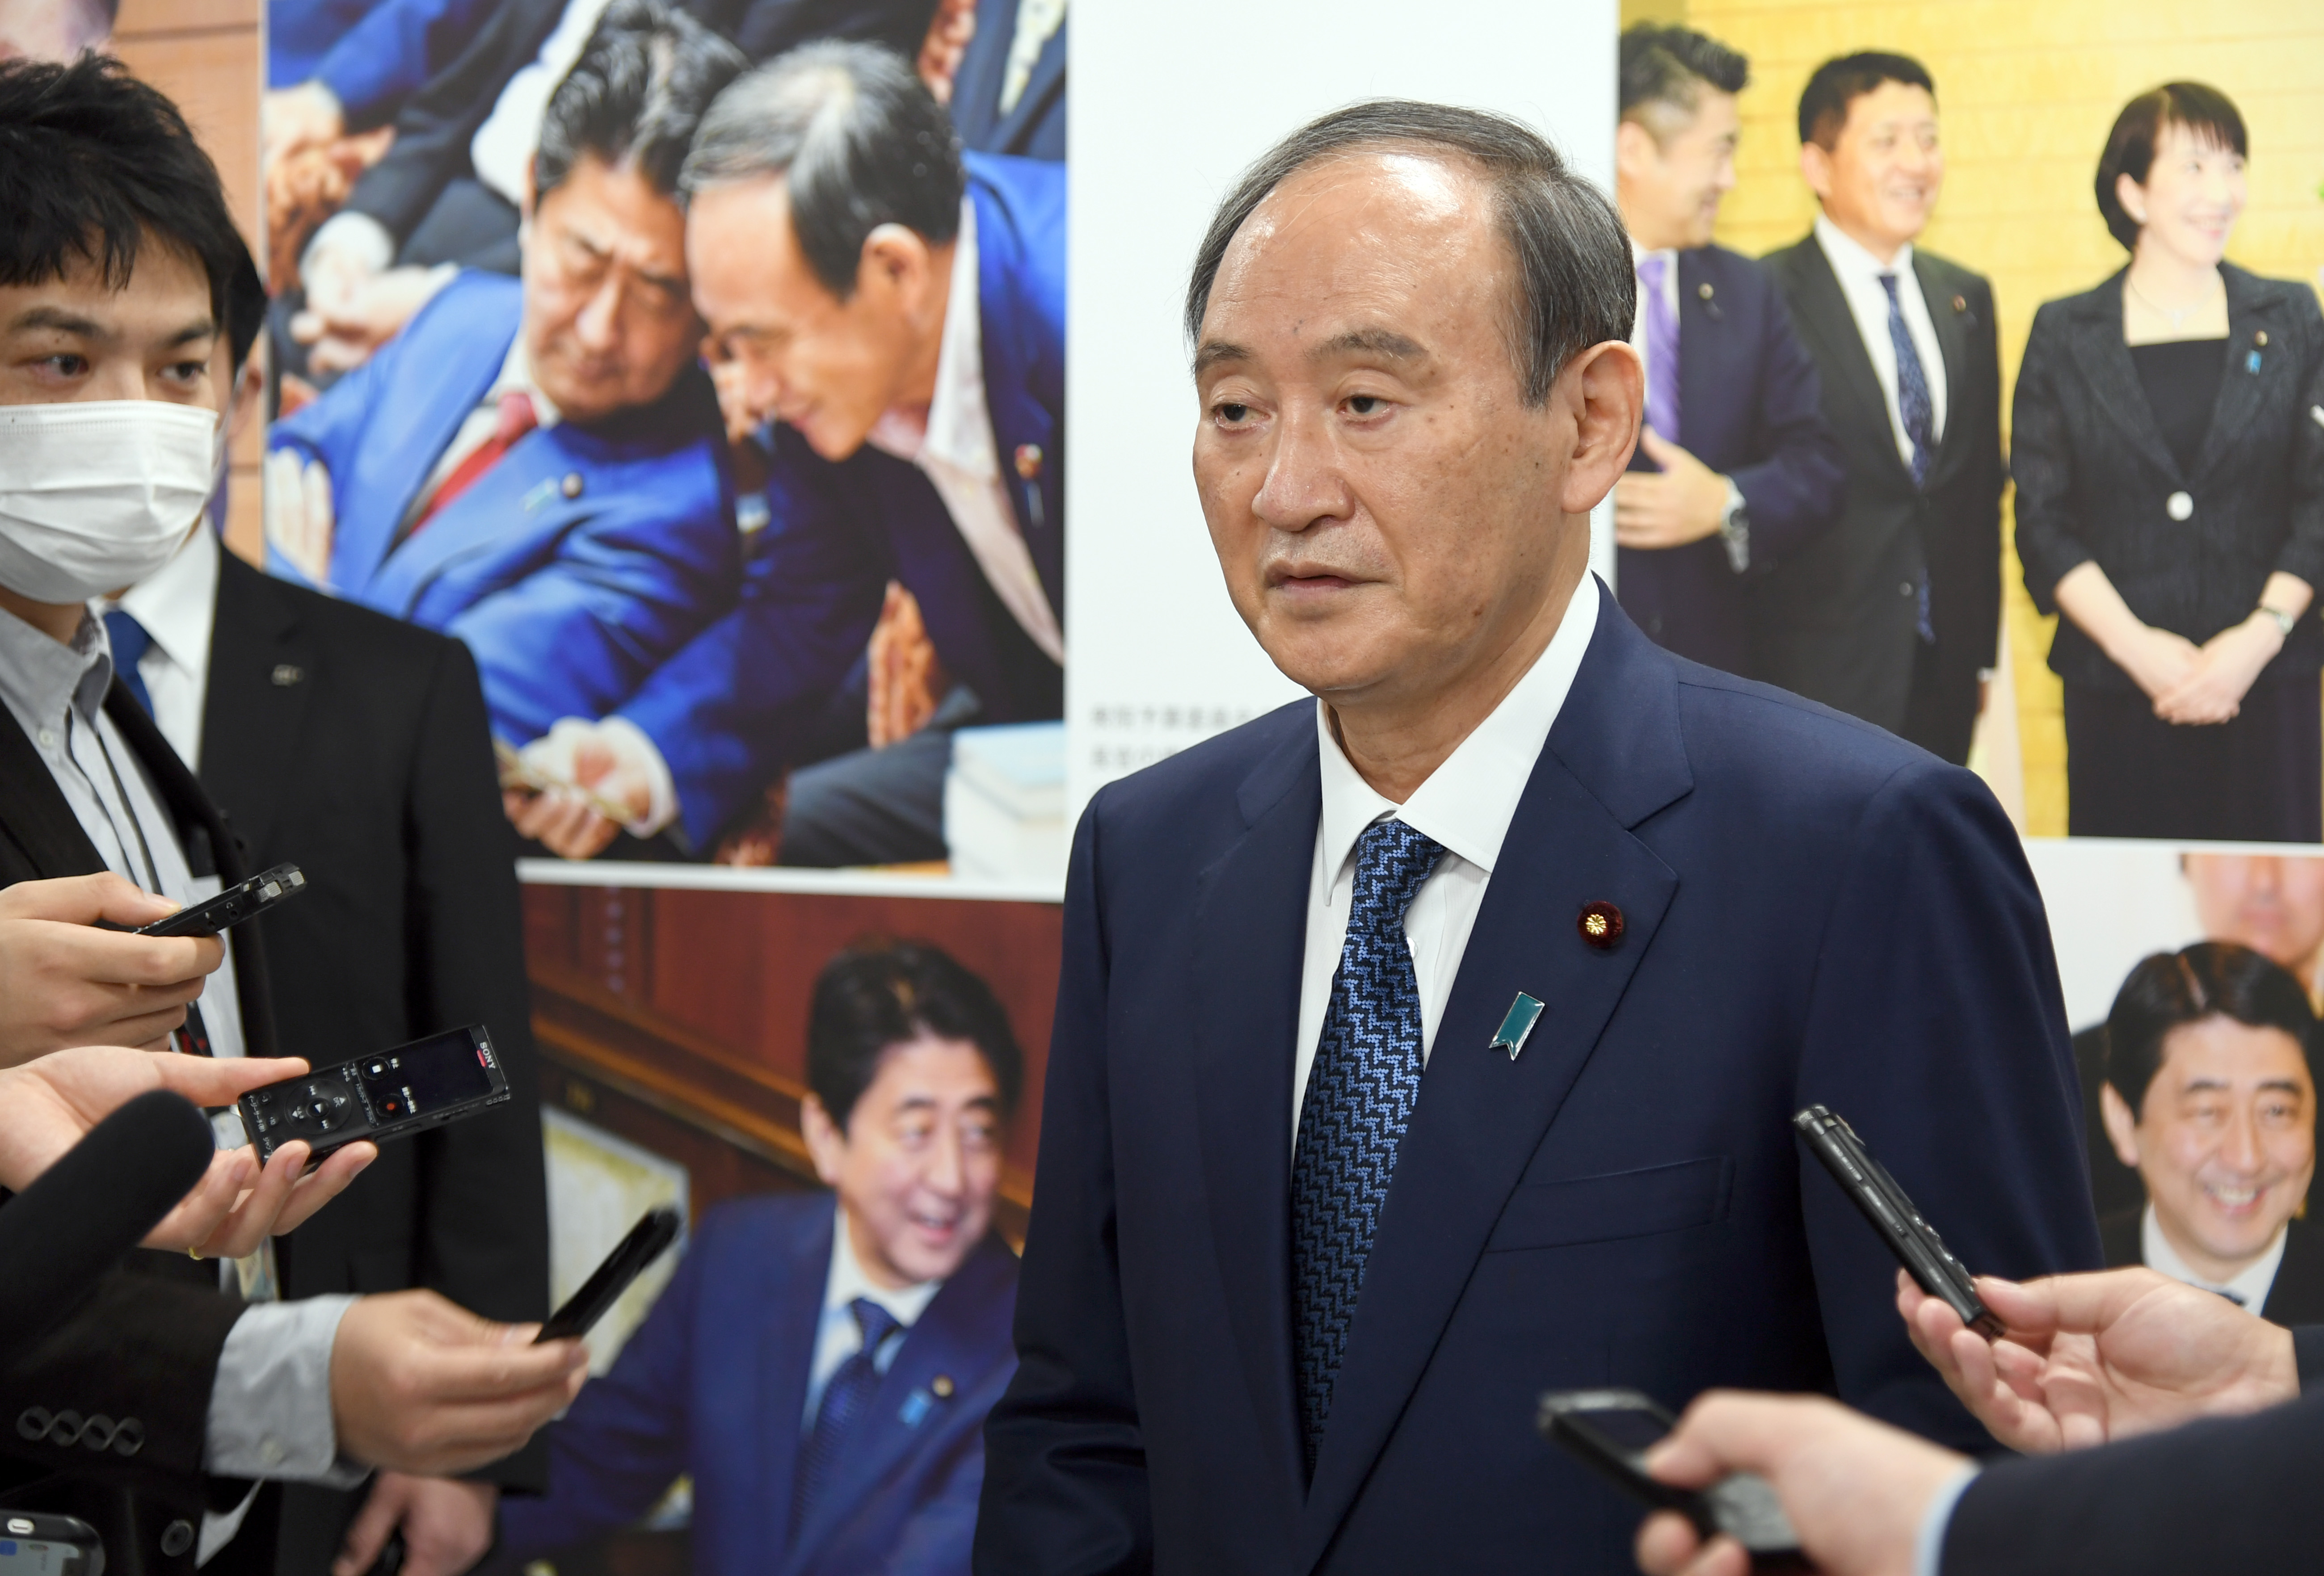 安倍晋三元首相の写真展開幕 菅義偉前首相「安倍さんの魅力引き出して